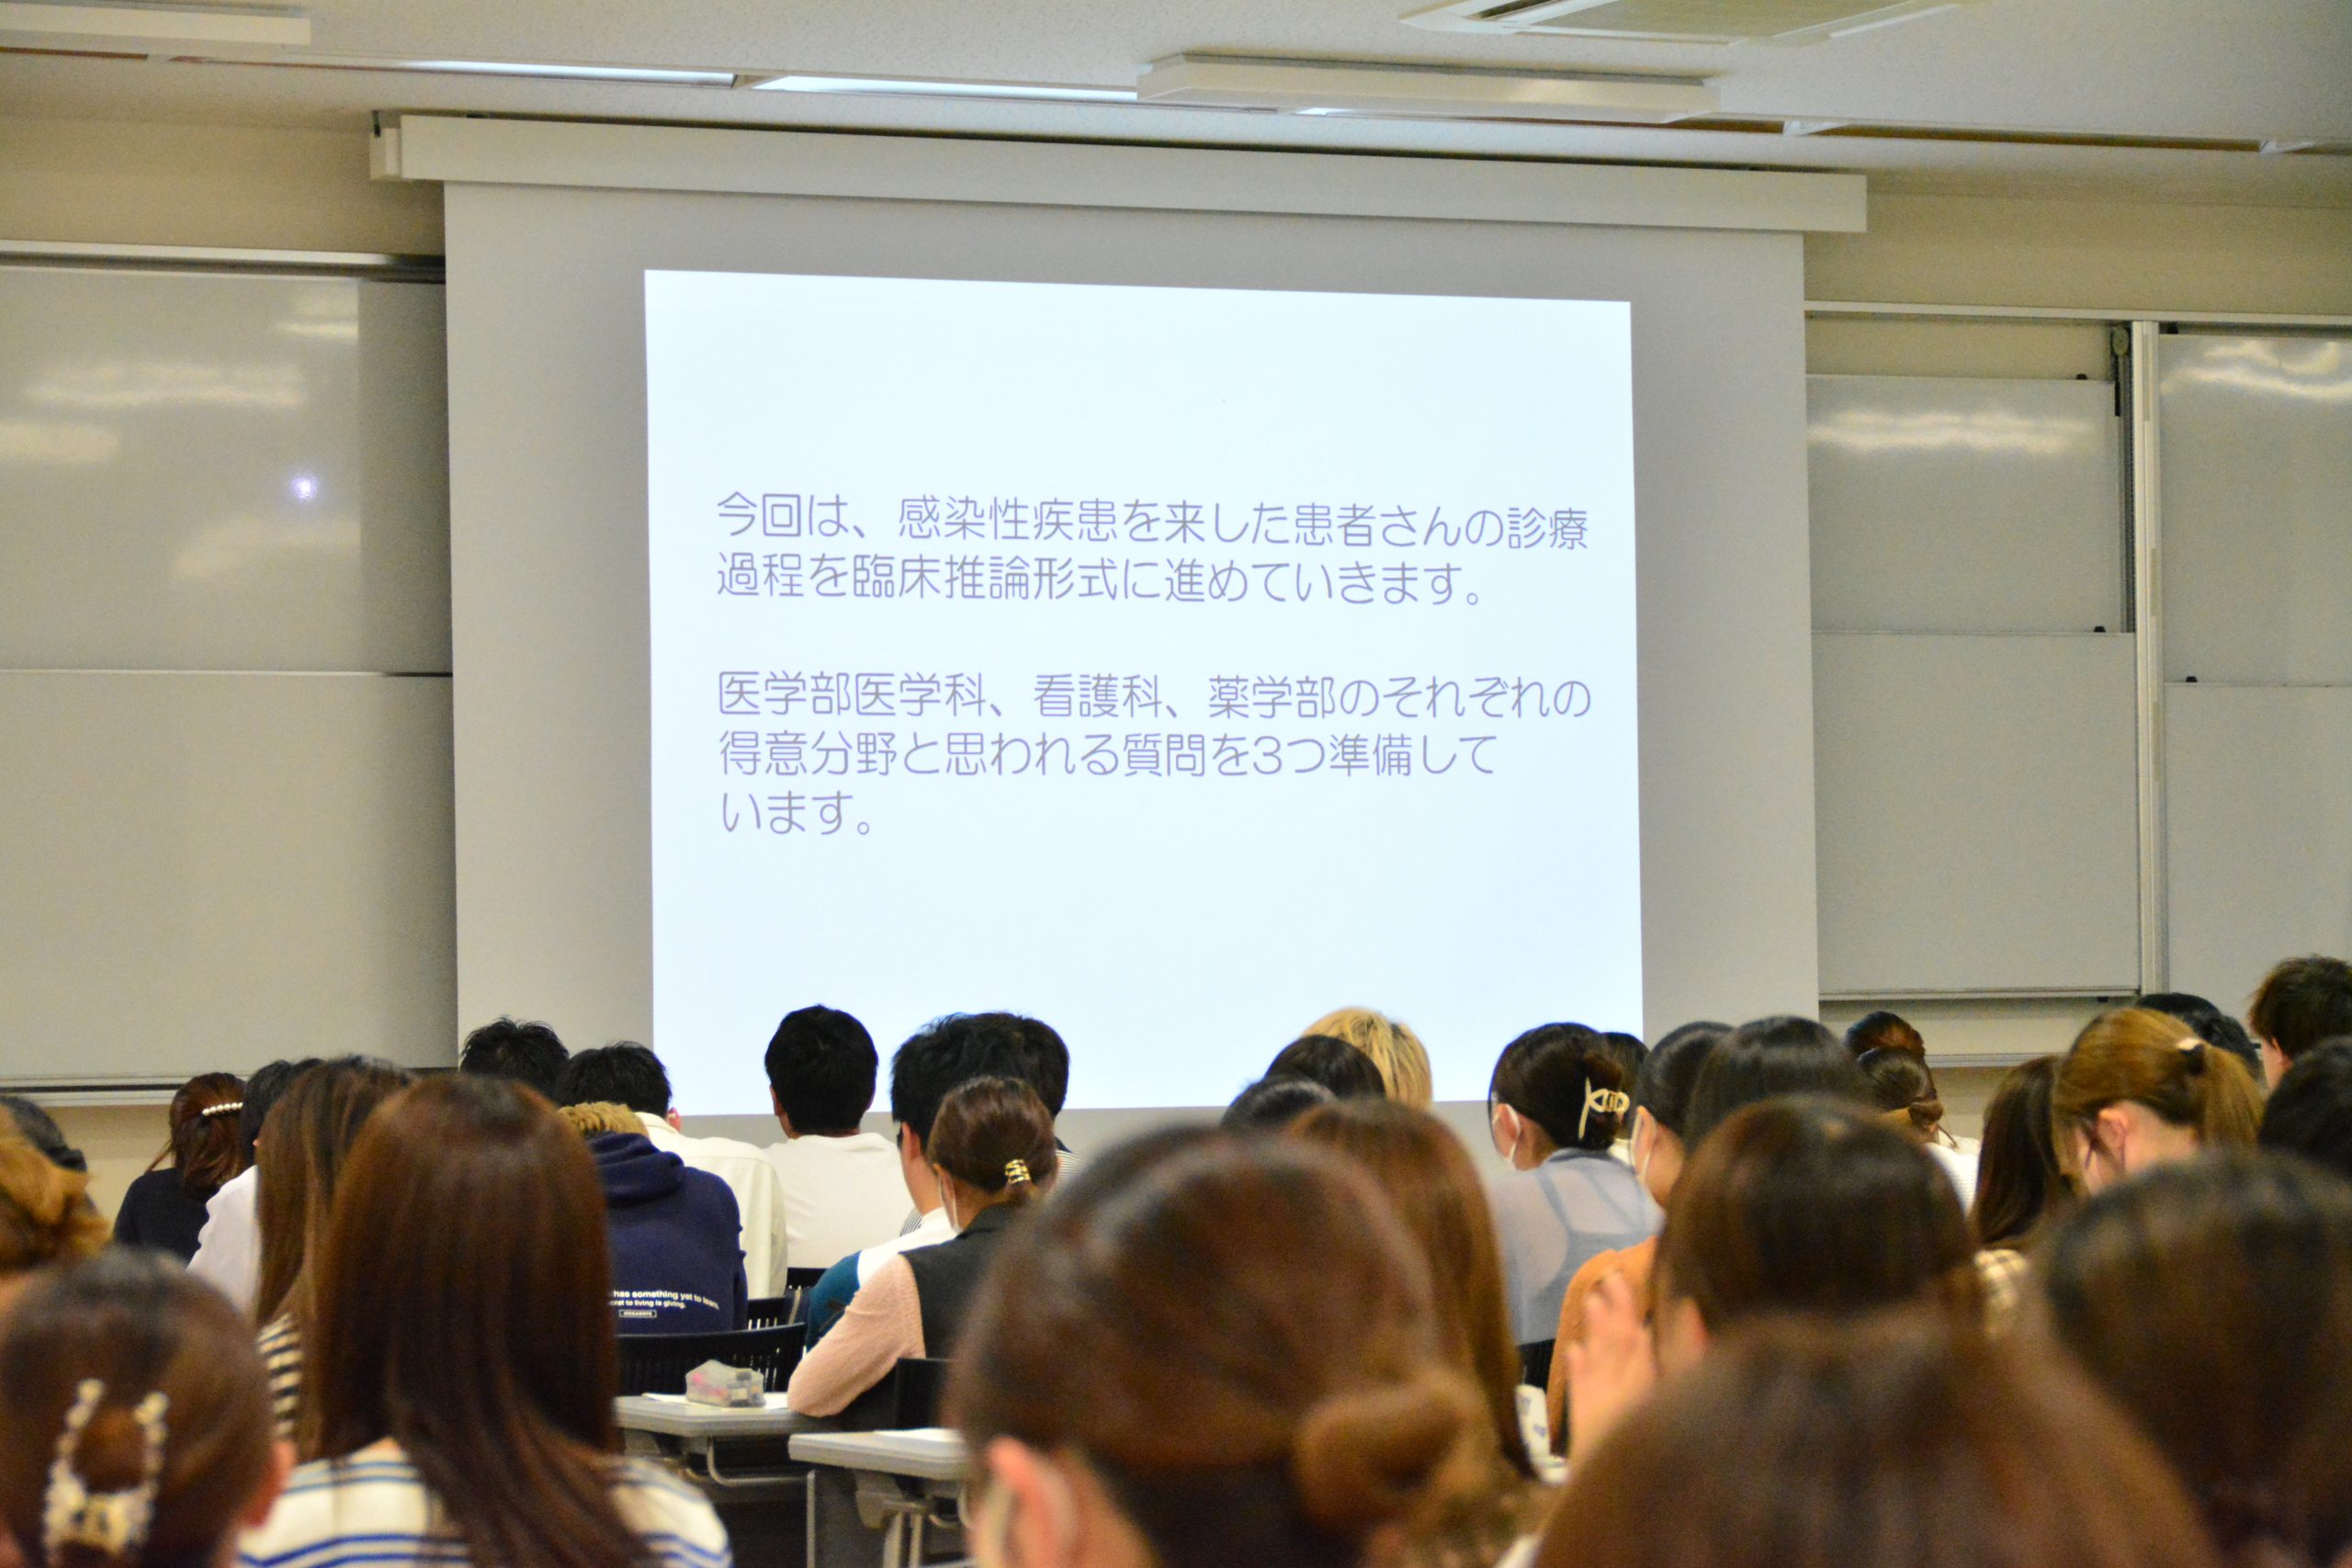 松山大学薬学部医療薬学科と医学部医学科及び看護学科との合同授業を開催しました。